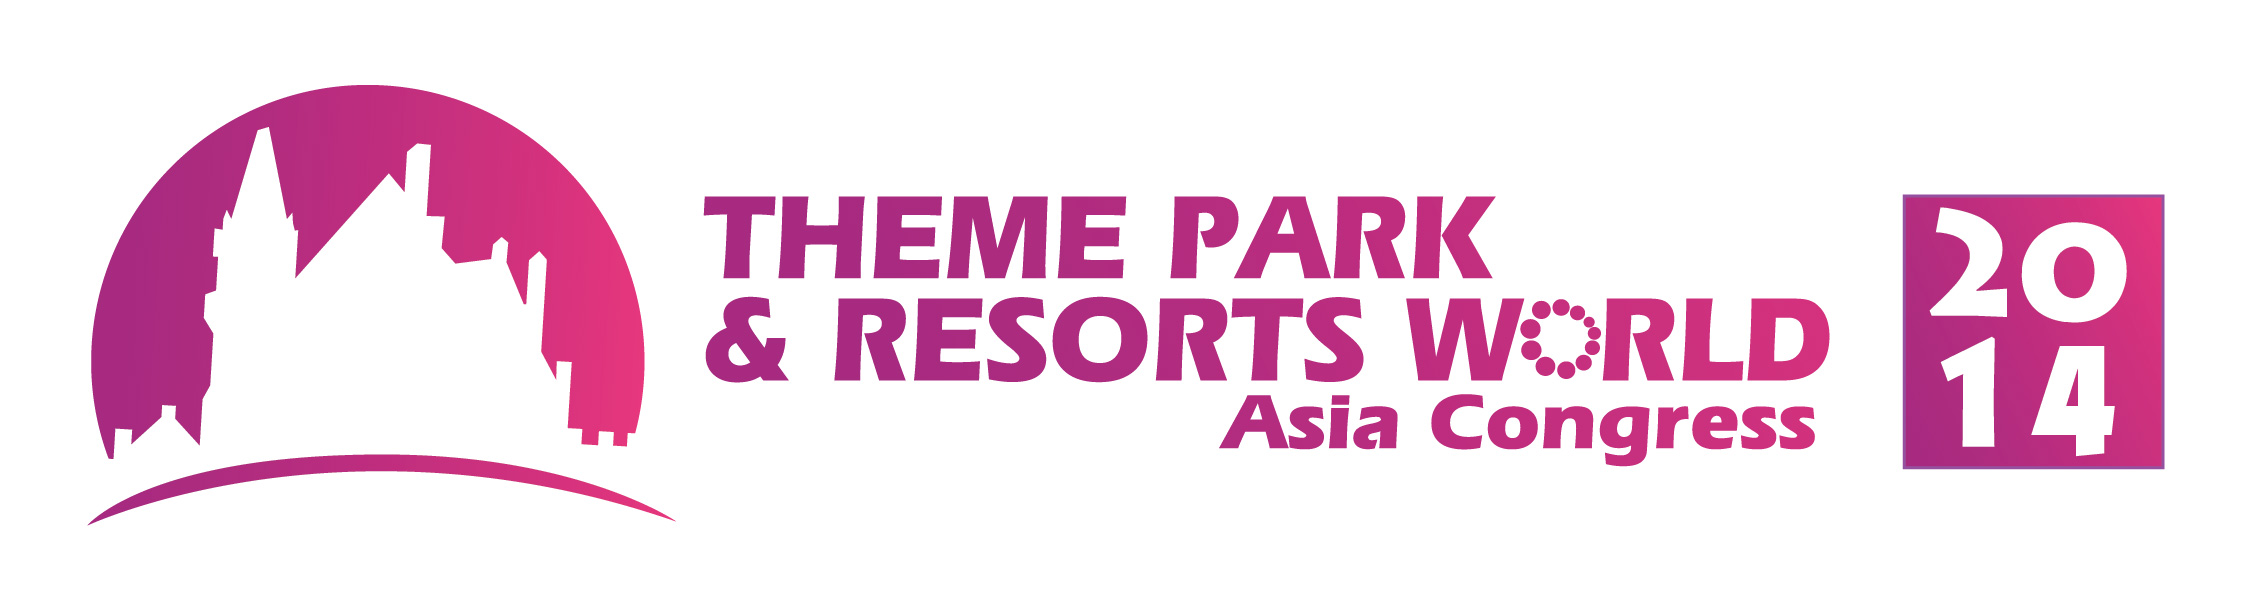 2014世界主题公园和度假区亚洲高层论坛(上海)